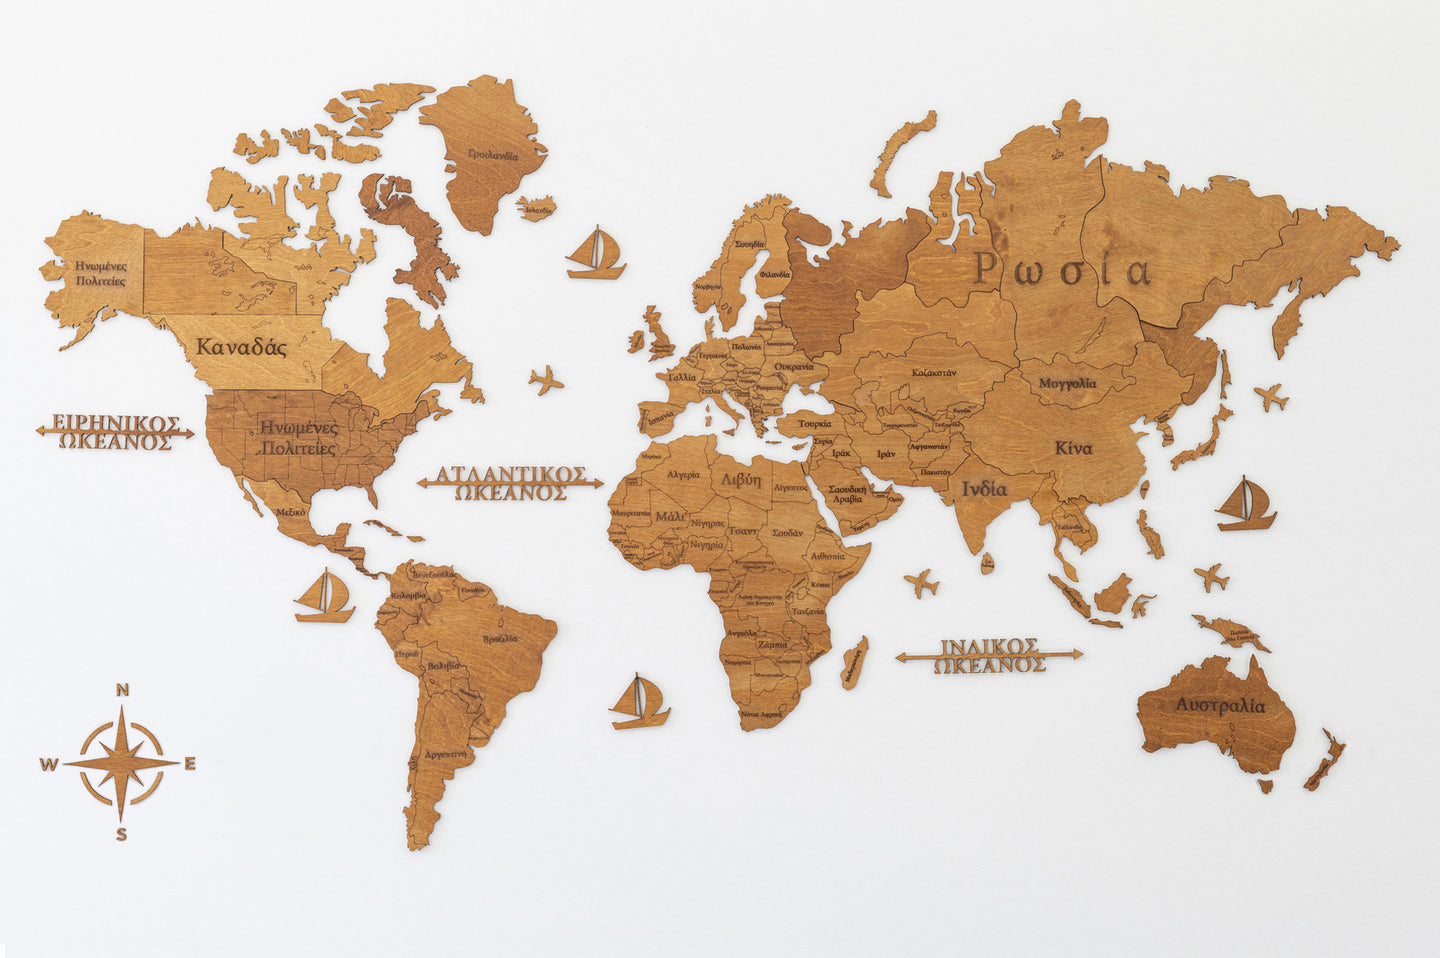 Ξύλινος παγκόσμιος χάρτης τοίχου ΔΡΥΣ - (190 x 110) / Με ονόματα